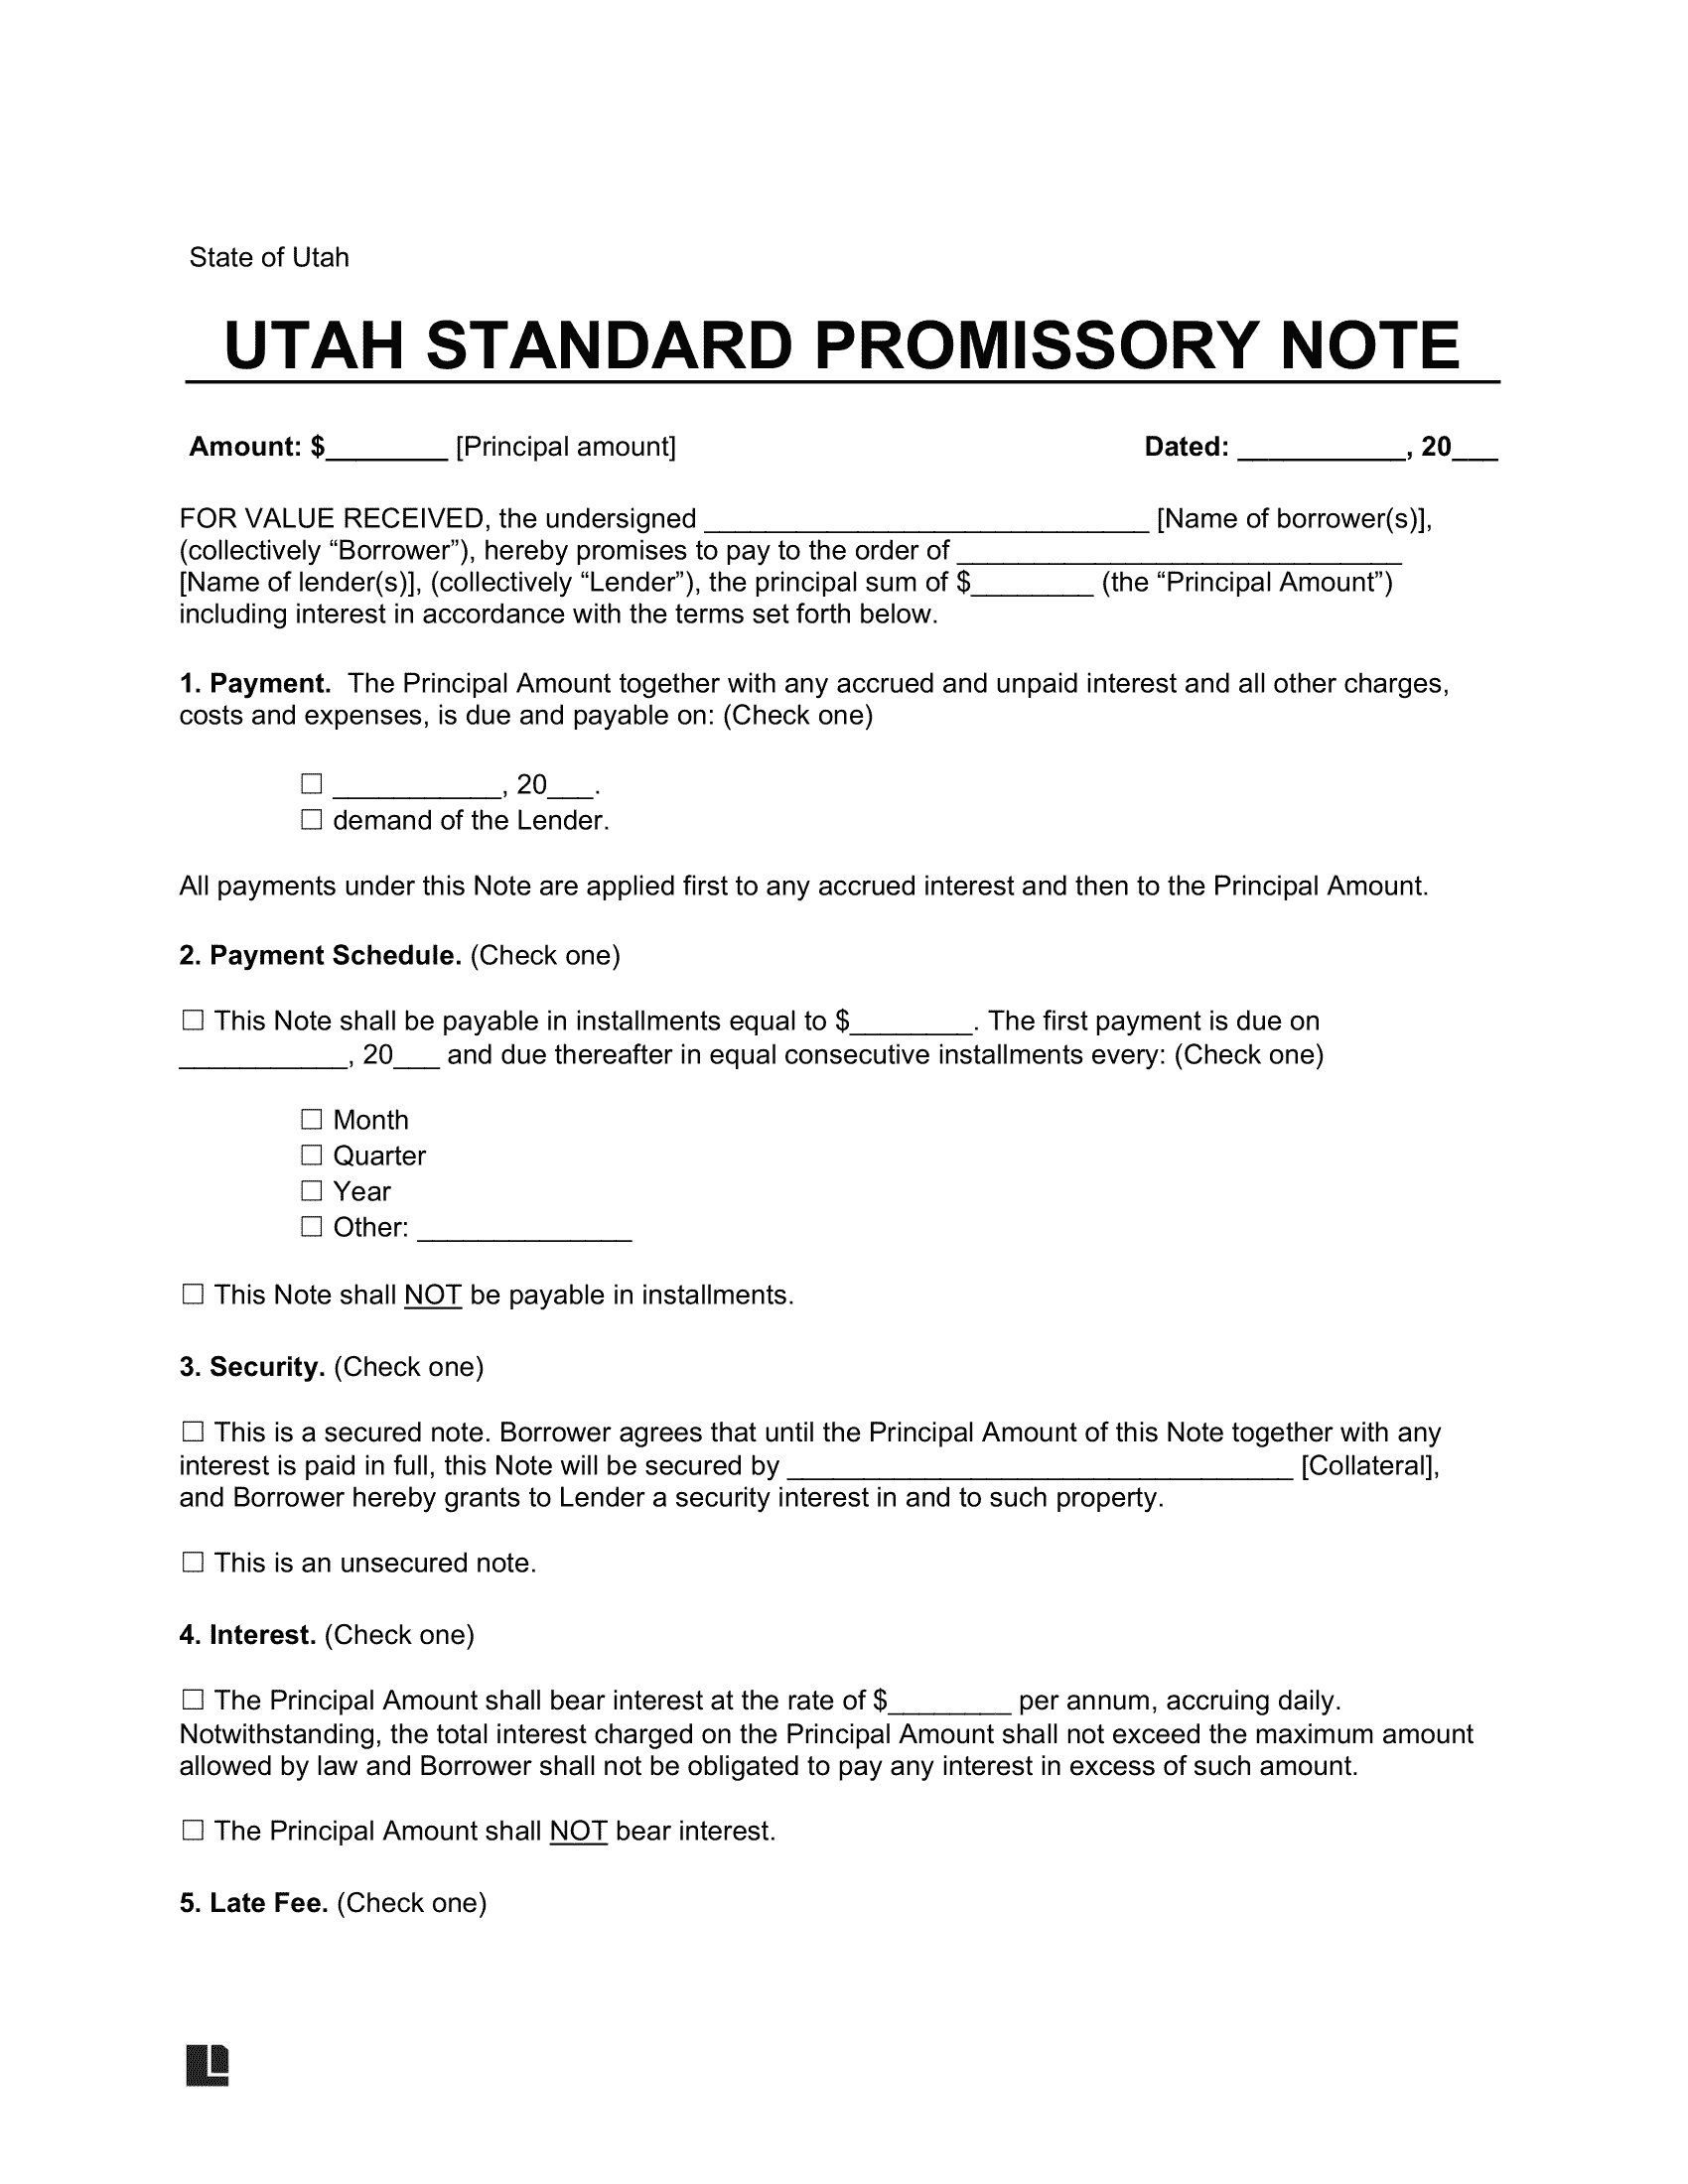 Utah Standard Promissory Note Template